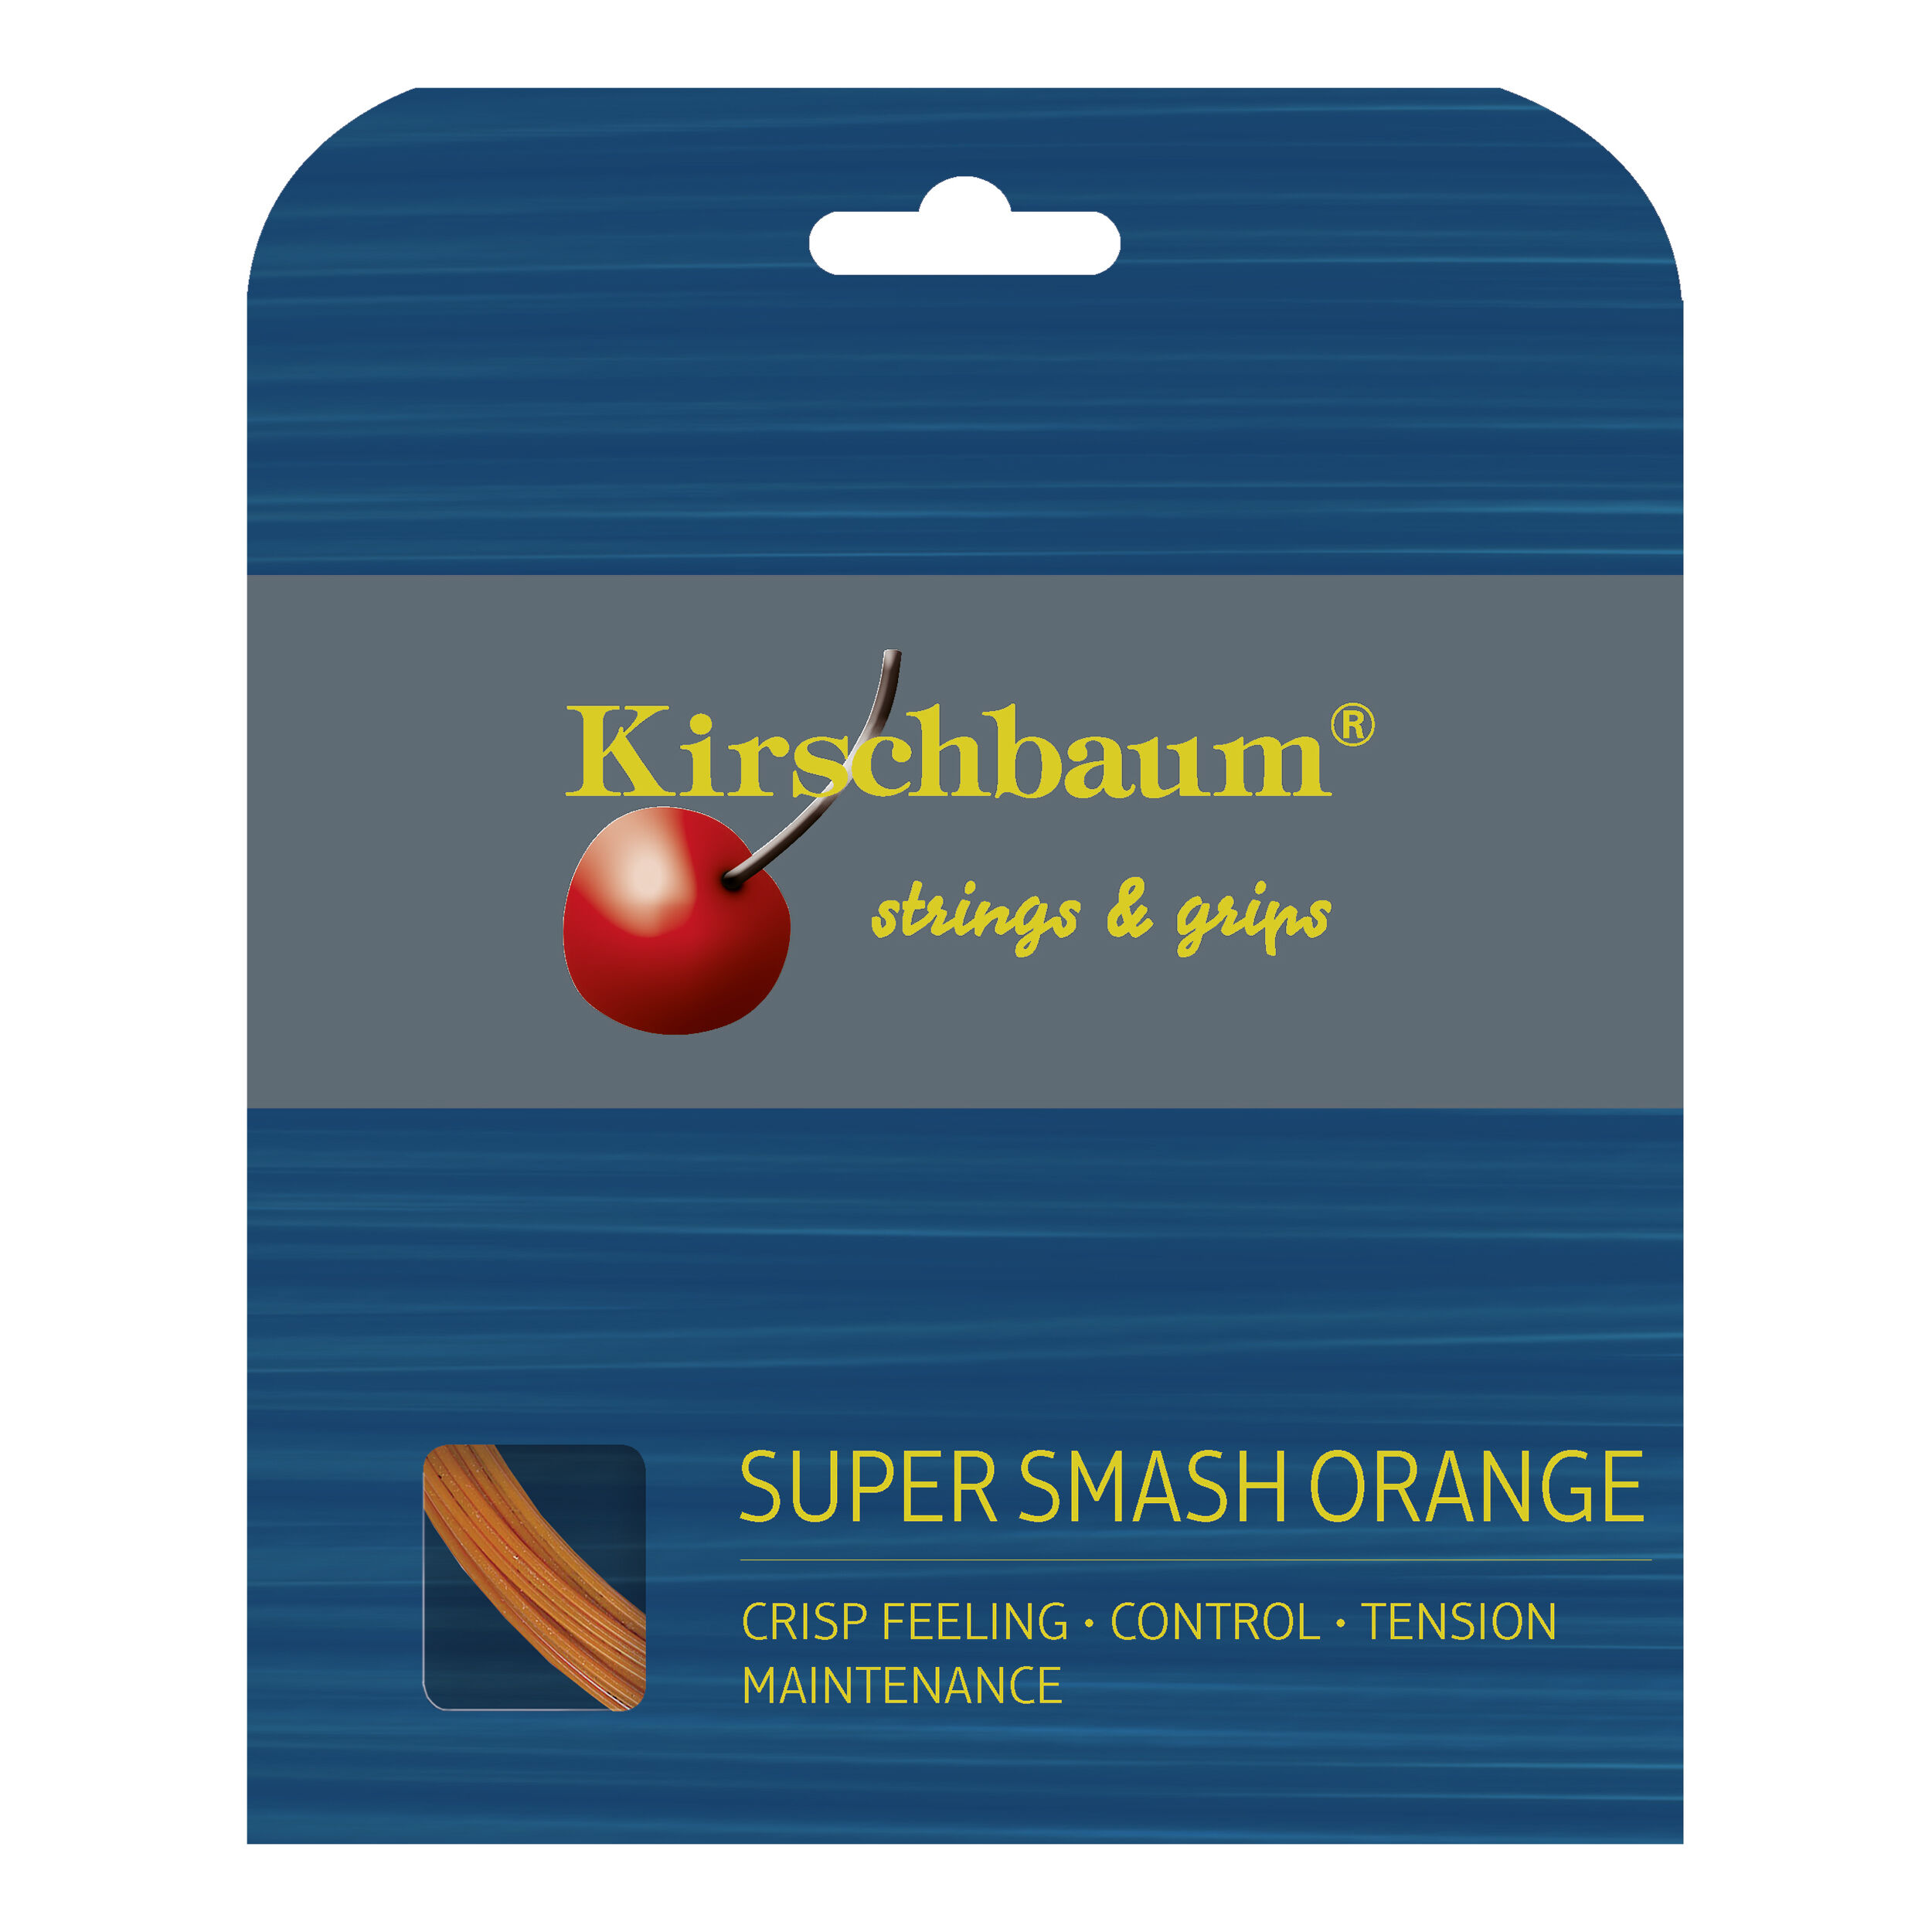 Kirschbaum Smash Orange 1,23 mm 200 m Tennissaiten 0,25€/m